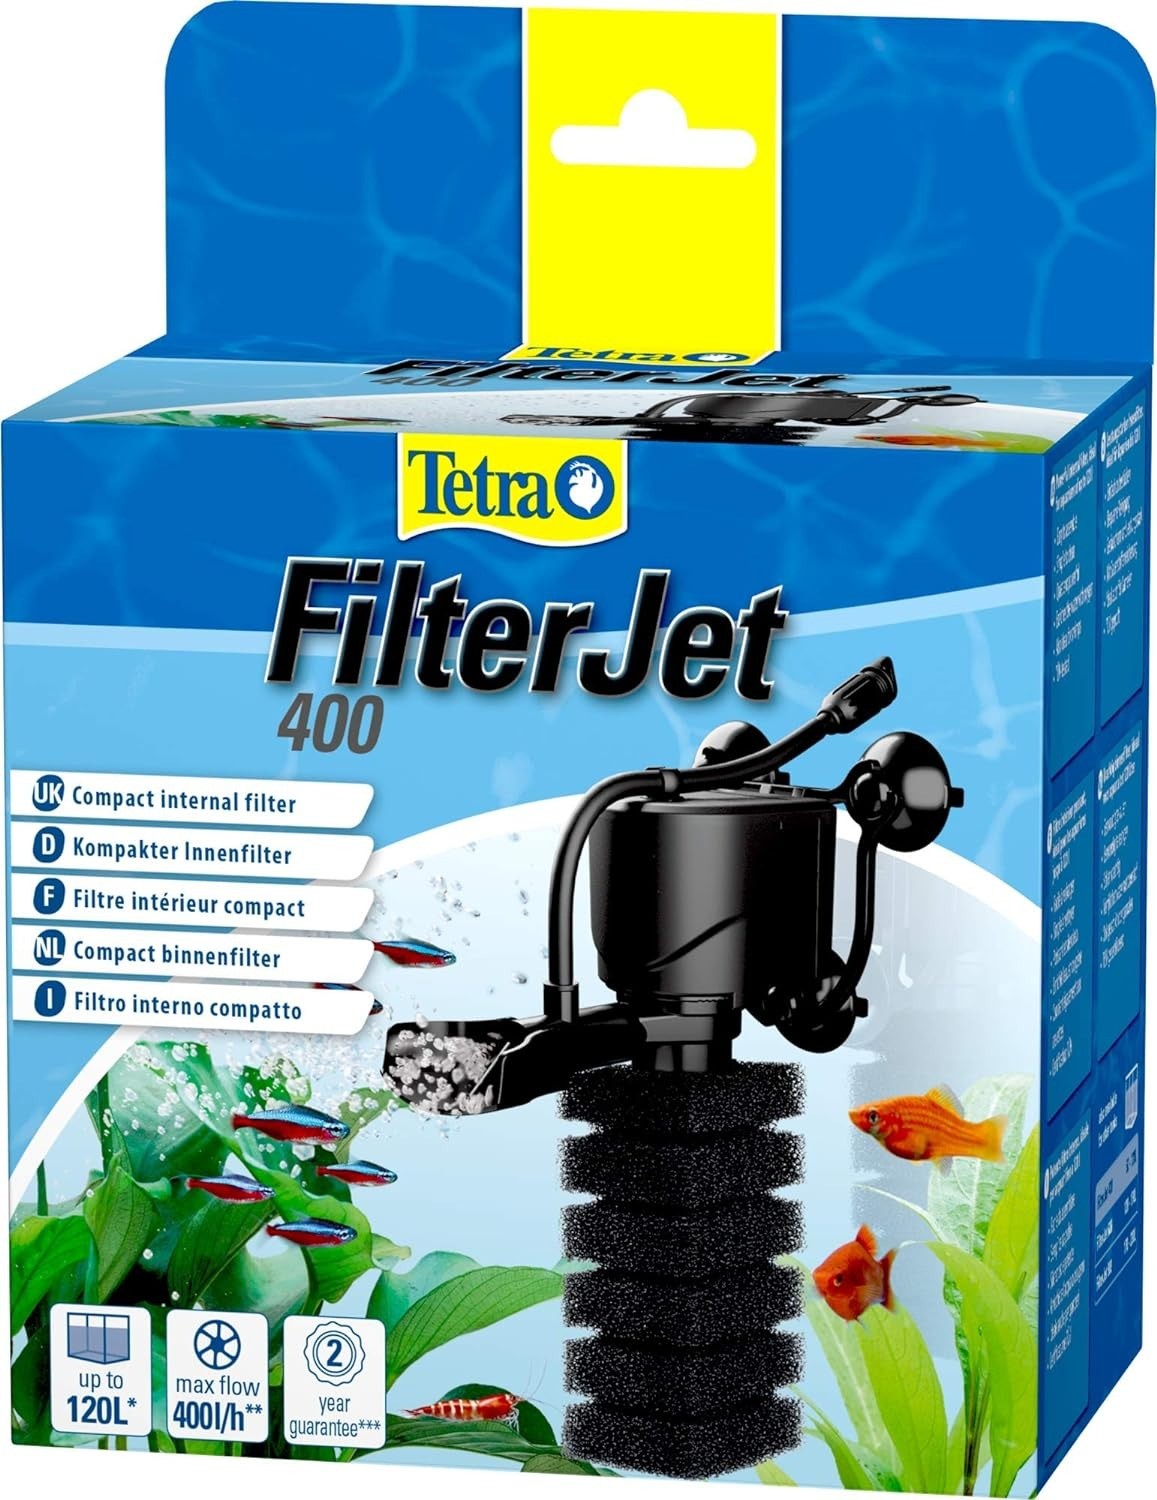 Tetra Filter Jet 400 Sünger İç Filtre 400 Lt/S